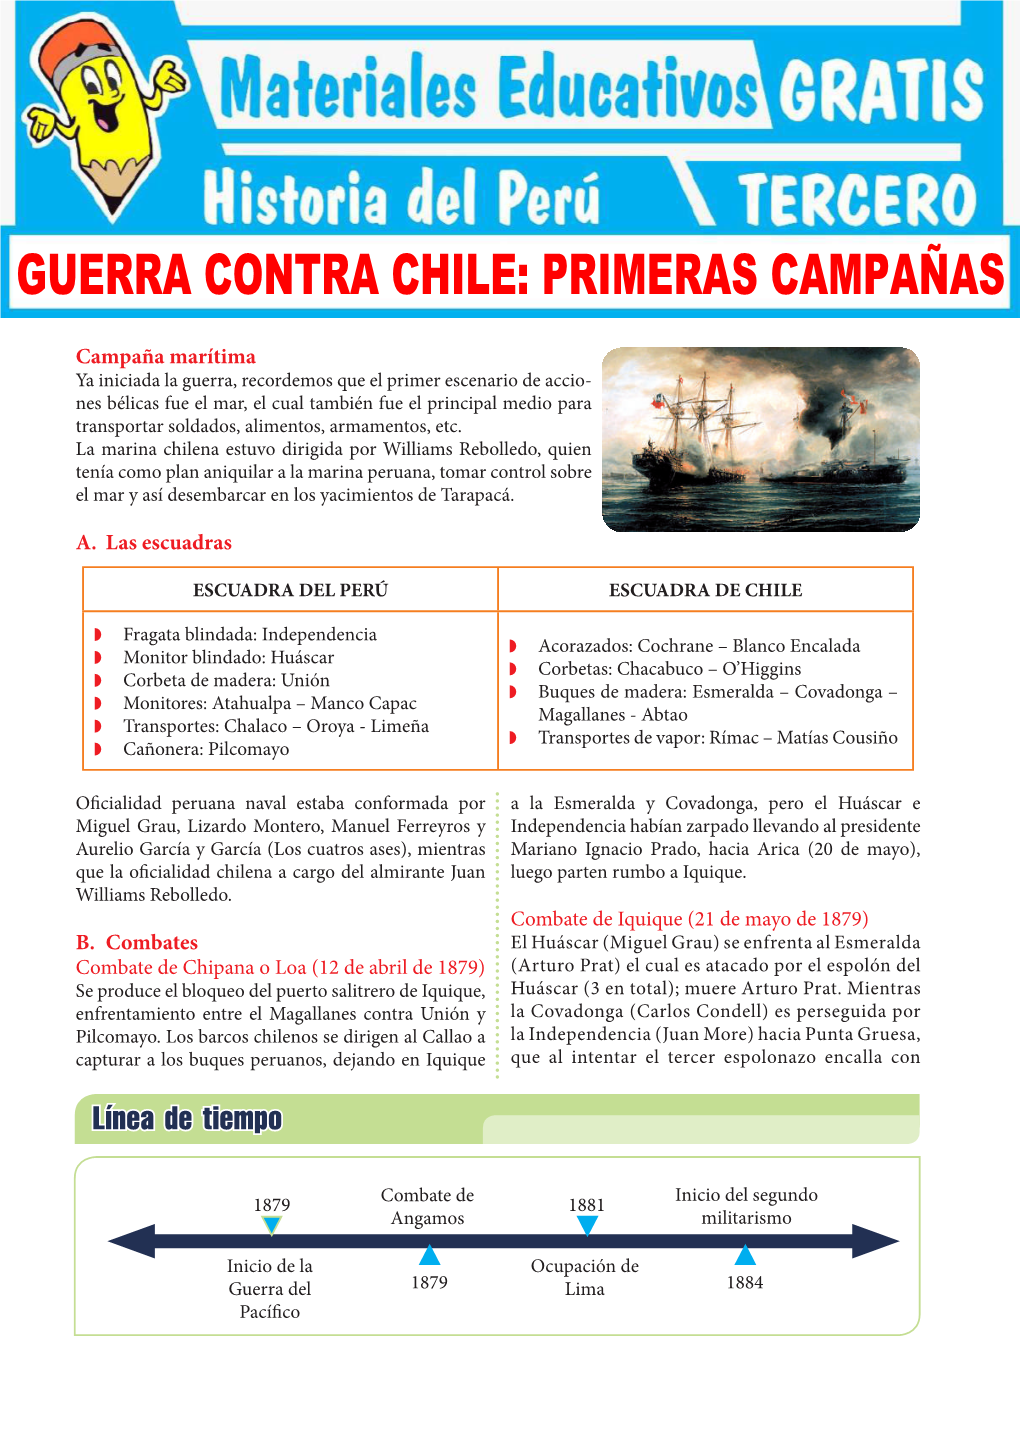 Guerra Contra Chile: Primeras Campañas